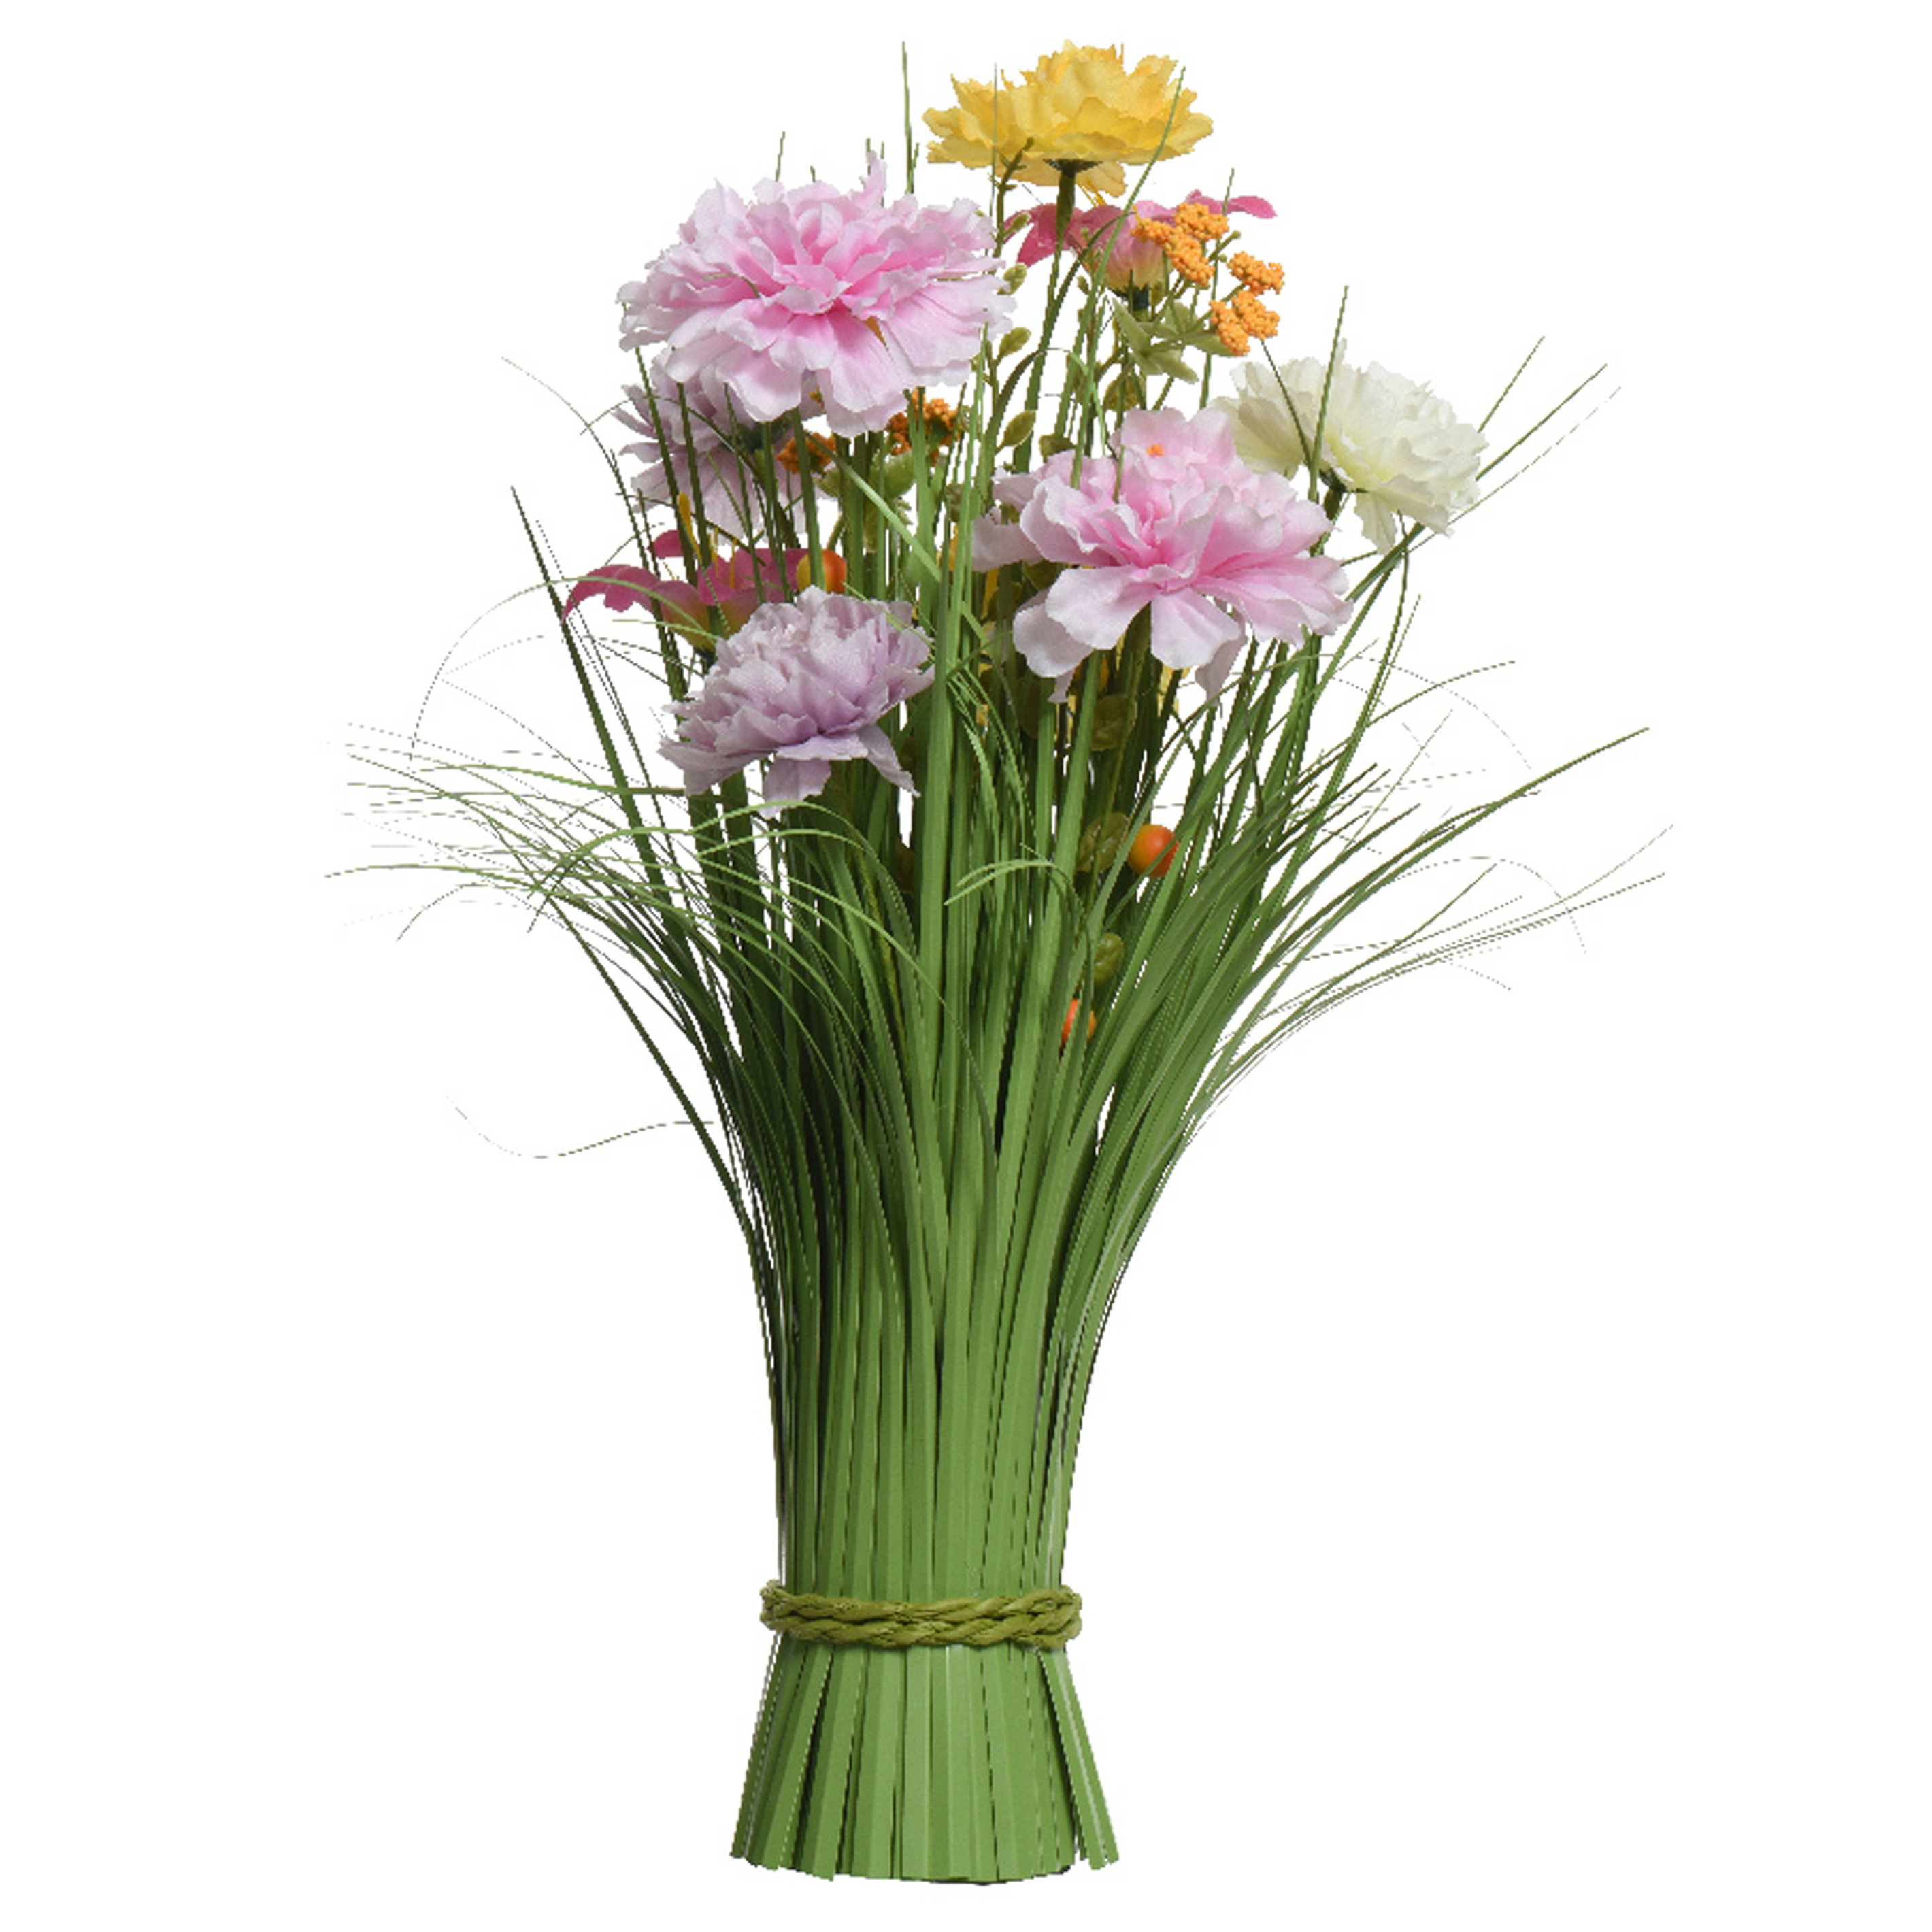 Kunstgras boeket bloemen anjers lila paars geel H40 cm lente boeket